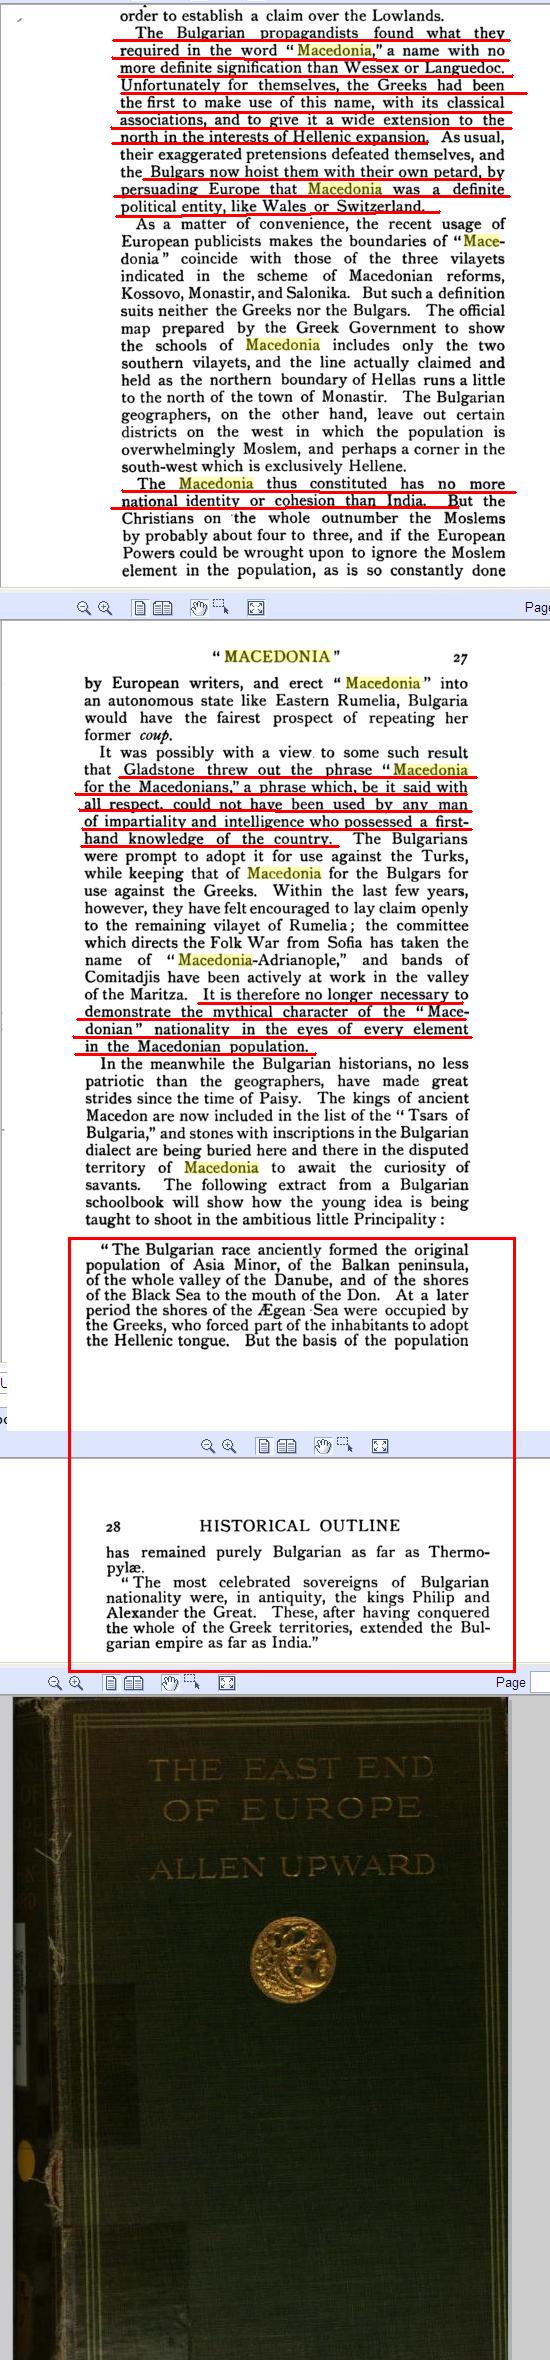 Ιστορική πηγή του 1908 αποκαλύπτει για το πως παραμυθιάζανε οι Βούλγαροι τα παιδιά στο σχολείο ότι ήσαν απόγονοι των αρχαίων Μακεδόνων